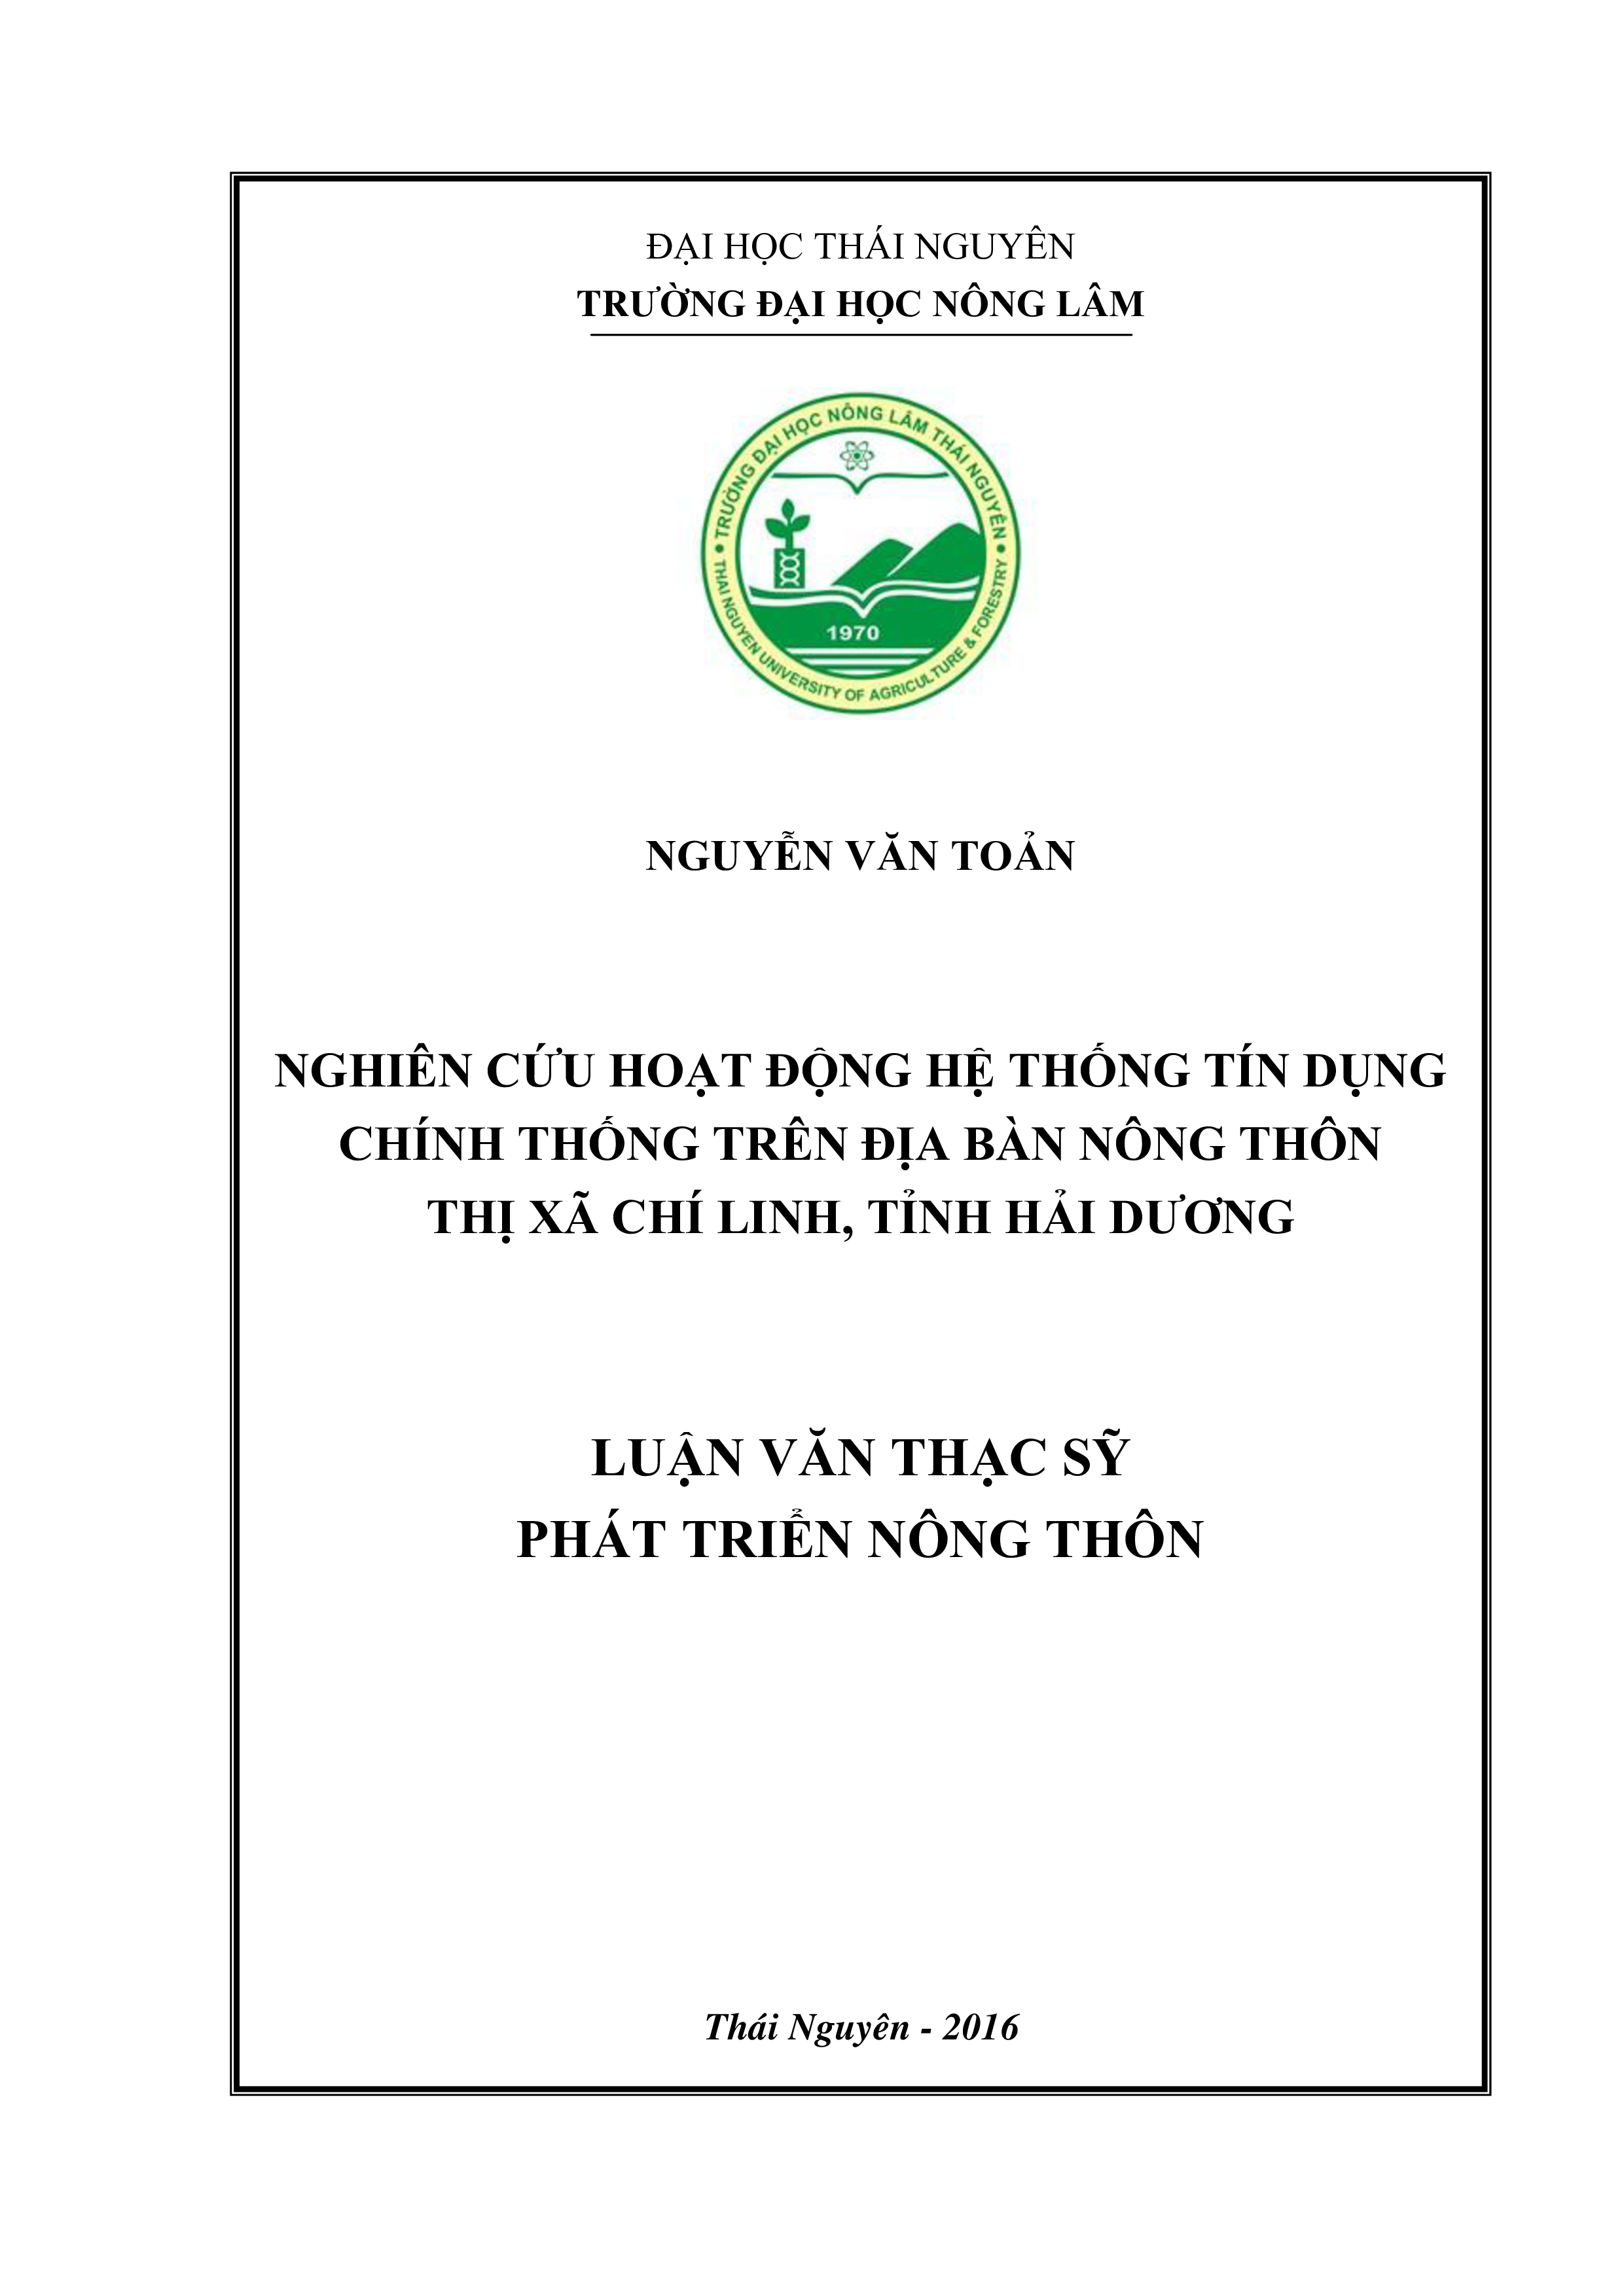 Nghiên cứu hoạt động hệ thống tín dụng chính thống trên địa bàn nông thôn  thị xã Chí Linh, tỉnh Hải Dương